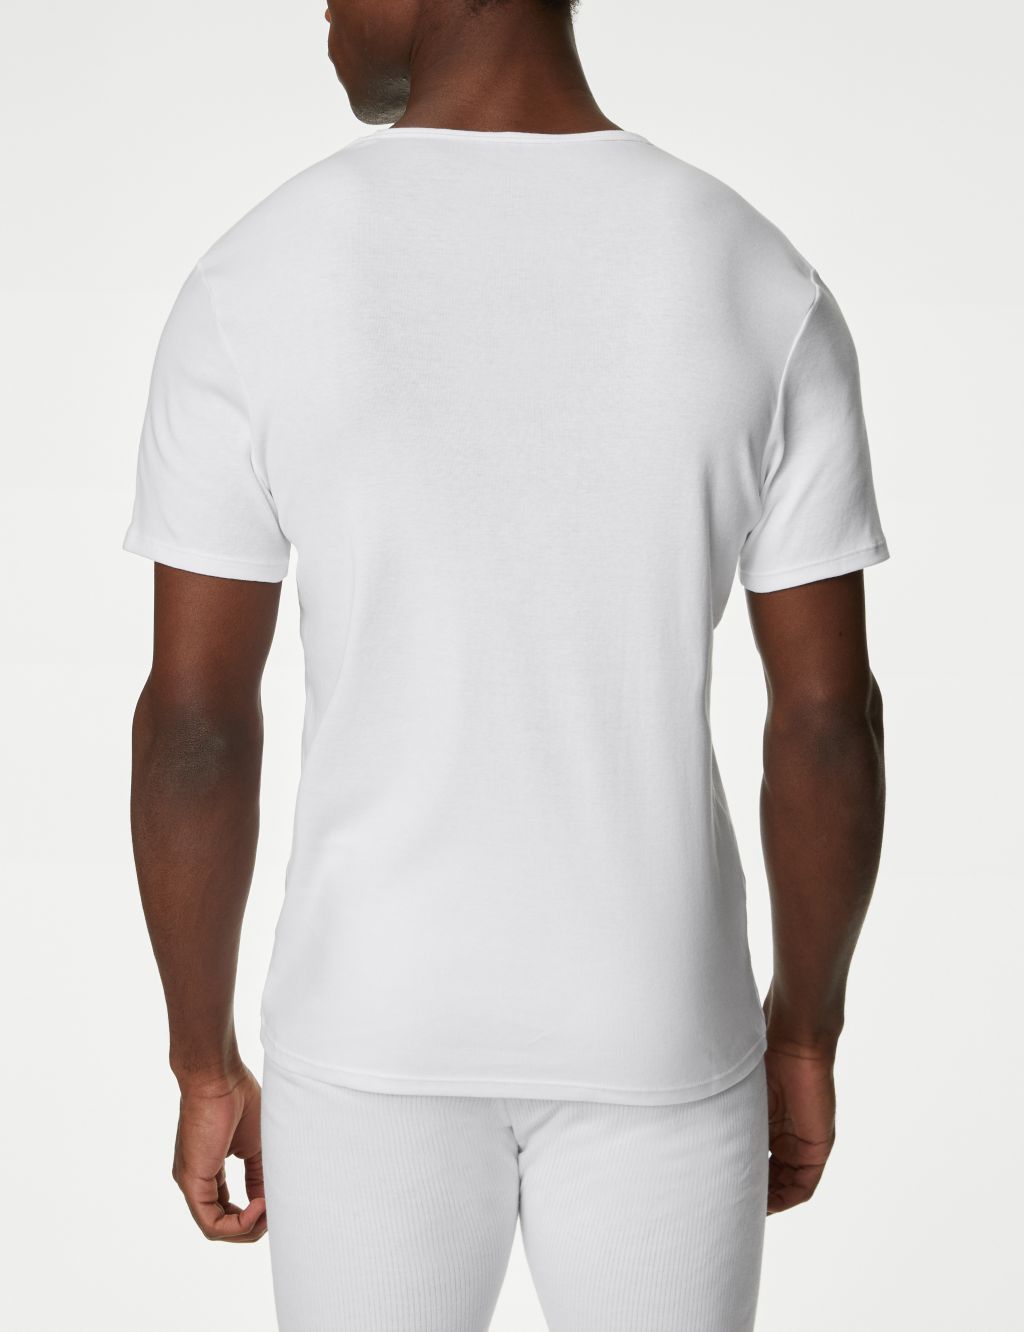 3pk Pure Cotton T-Shirt Vests image 4